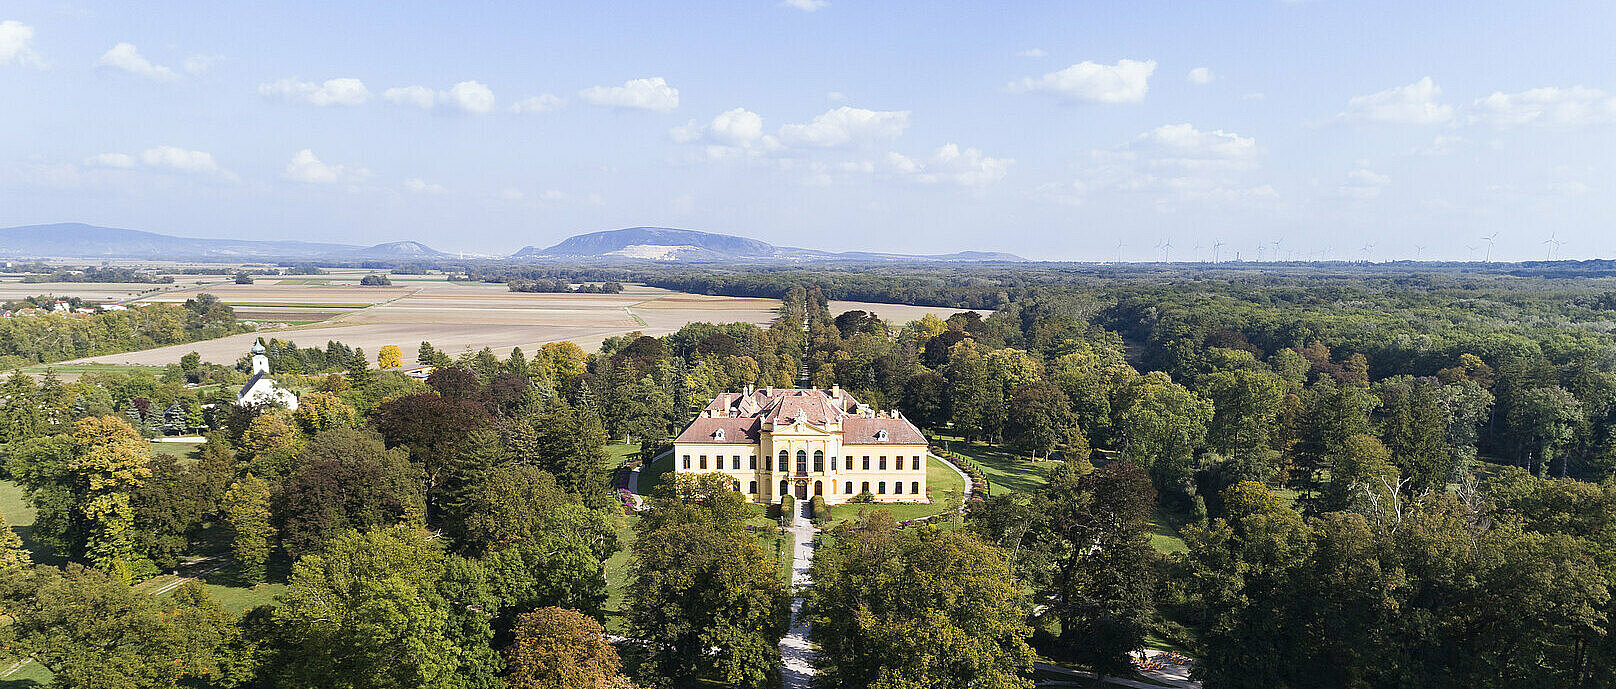 Schloss Eckartsau von oben - Luftbild